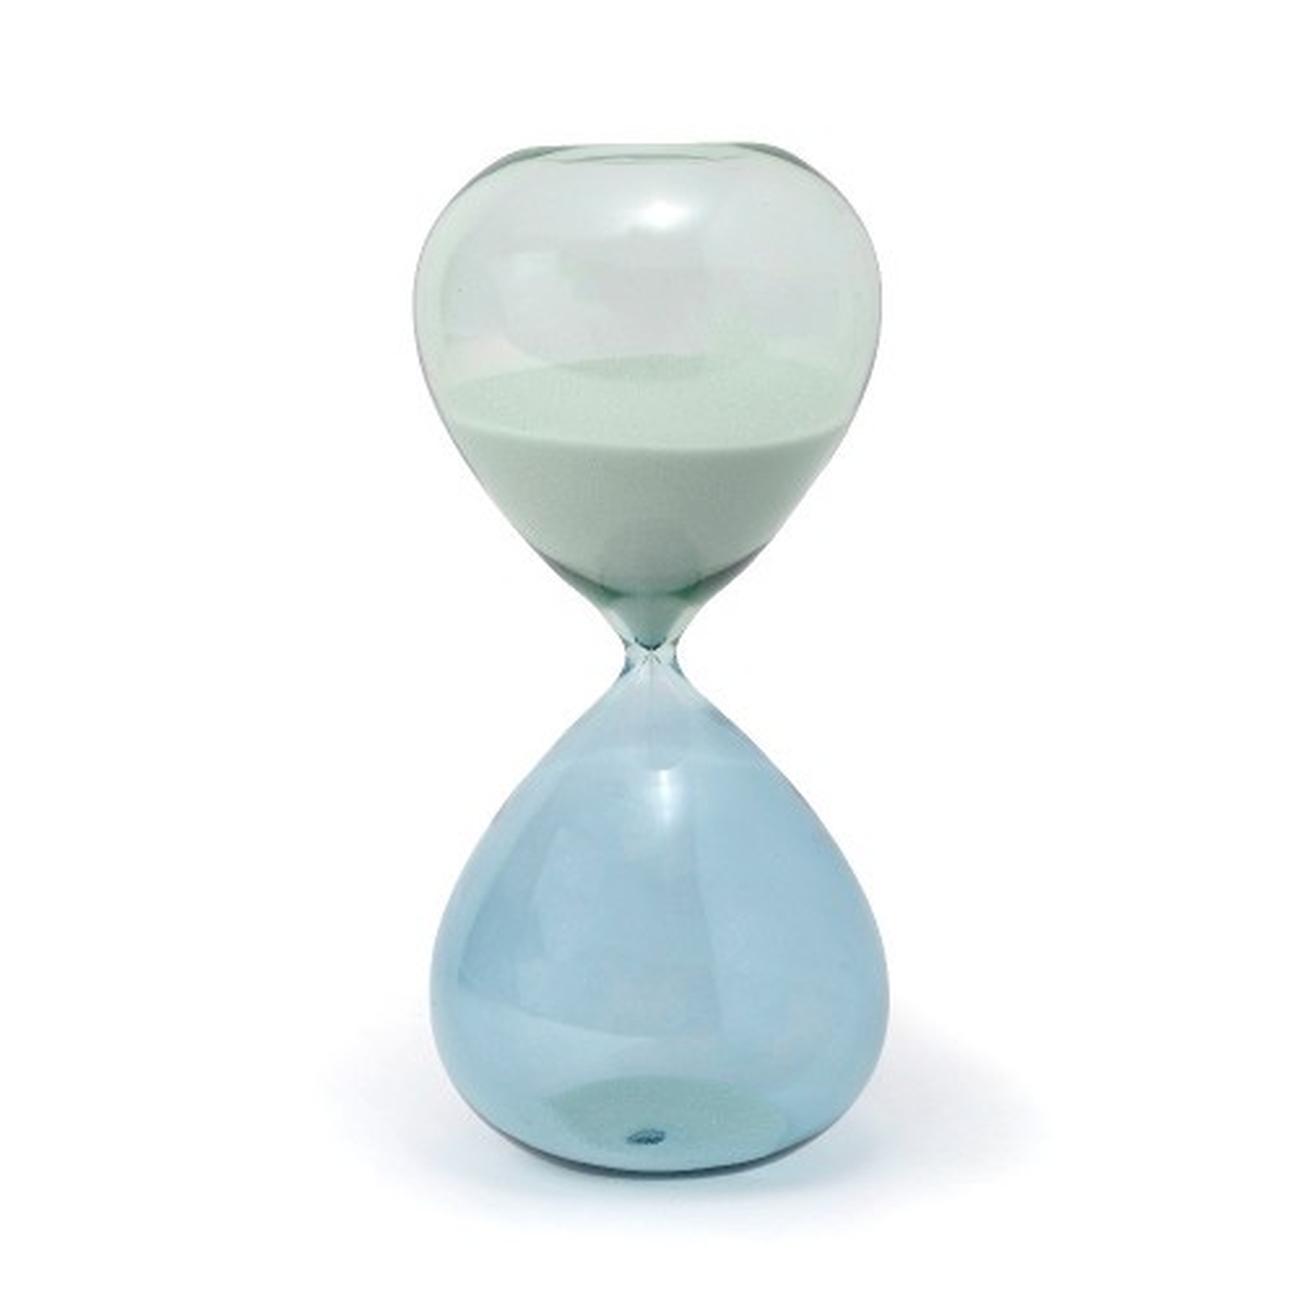 gen-hourglass-seaglass-ombre-1-hr - Designworks Ink Hourglass Seaglass Ombre 1 Hour